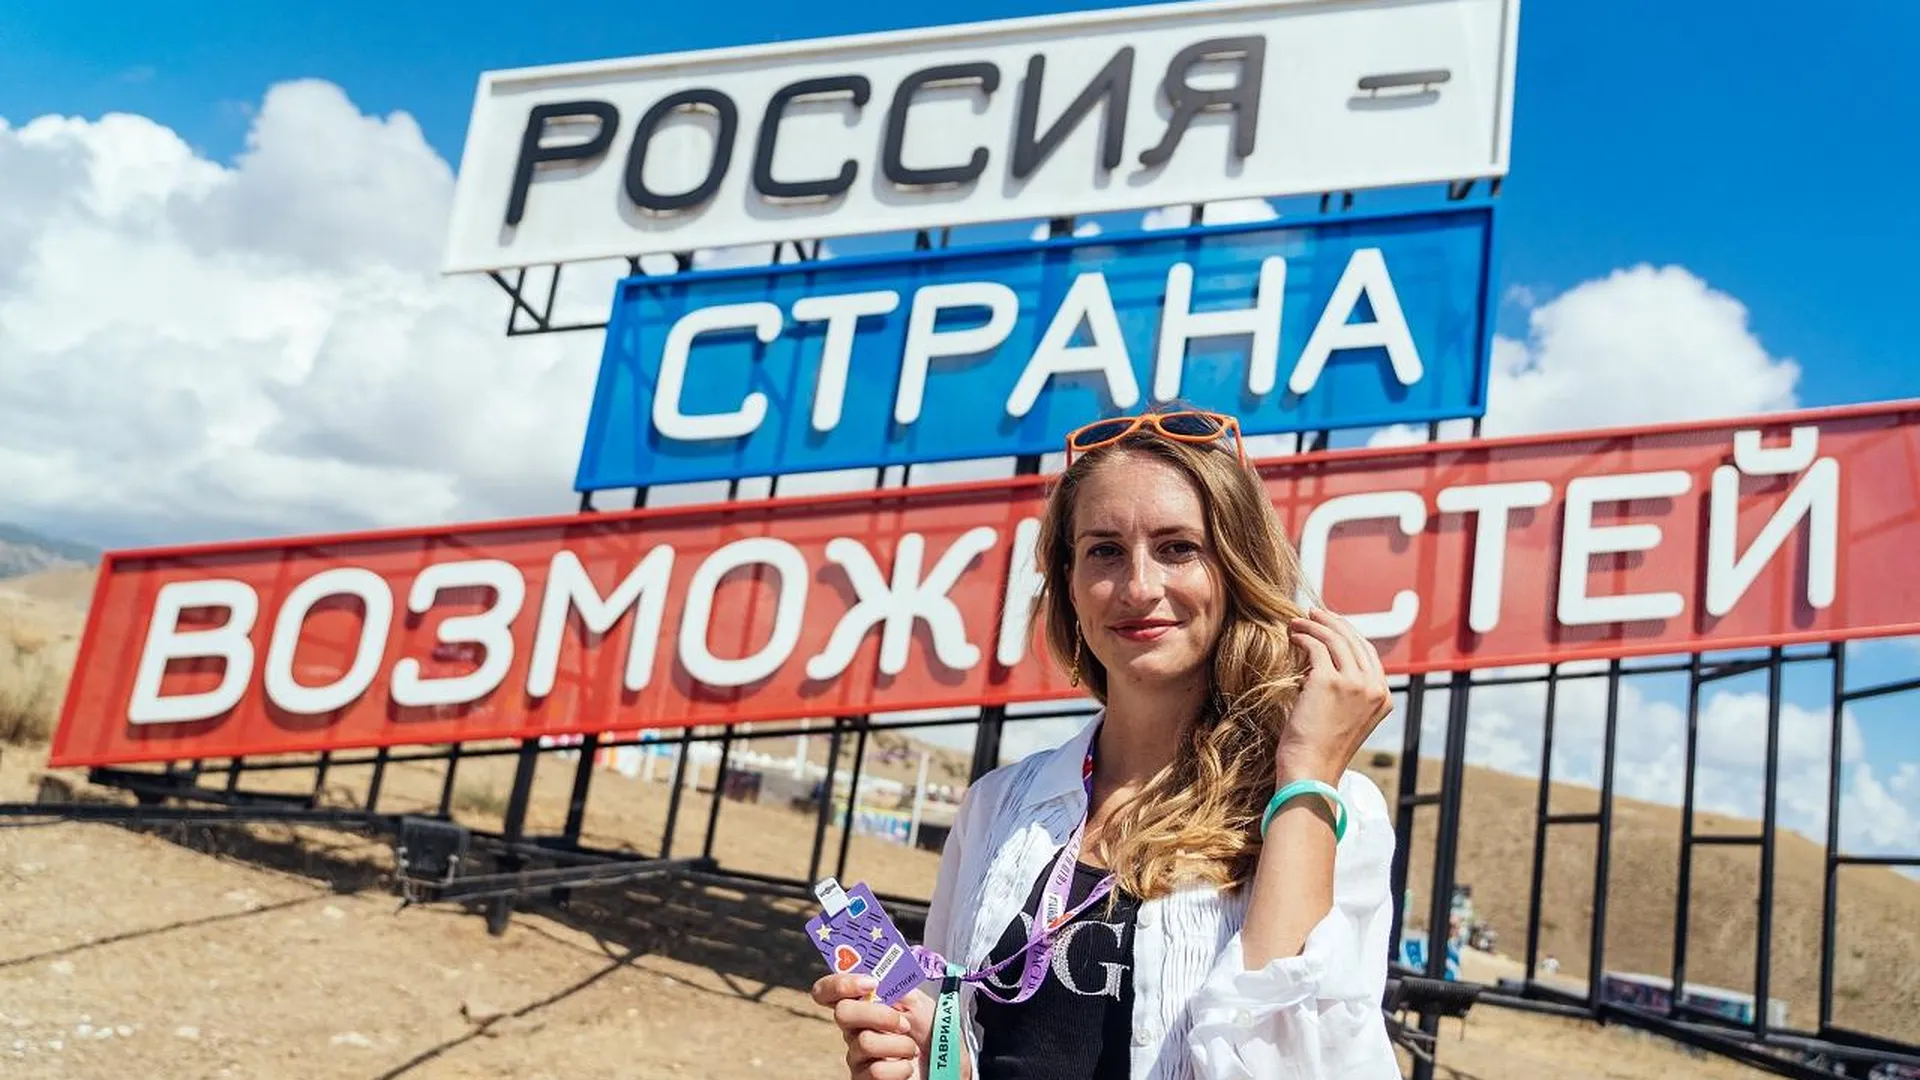 Послы гостеприимства: в Подмосковье выбрали представителей главного туристического конкурса России